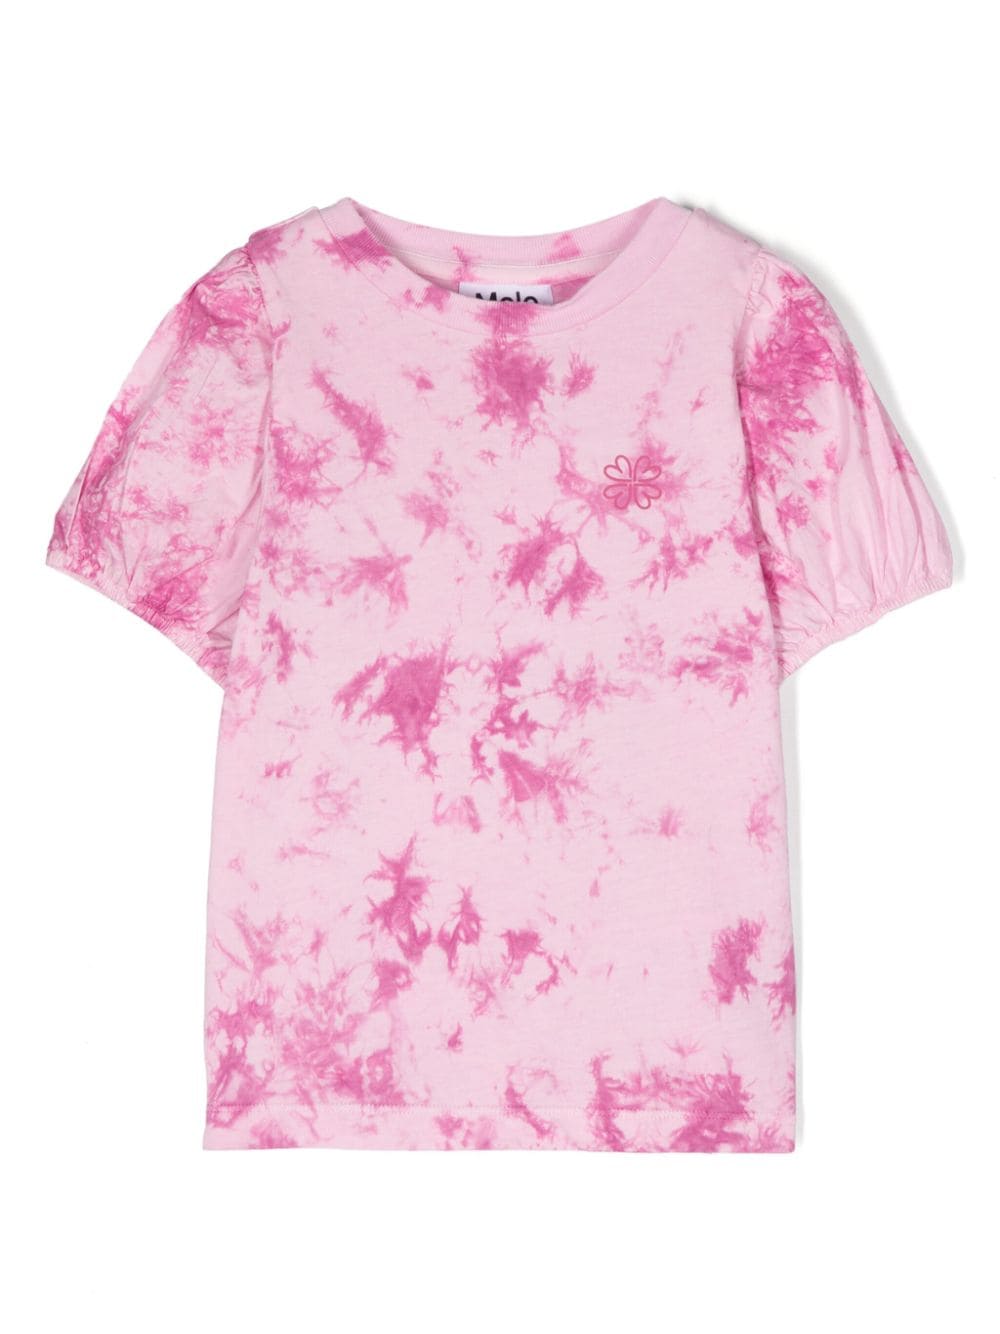 Molo Kids' Ritta Tie-dye Print Top In Pink